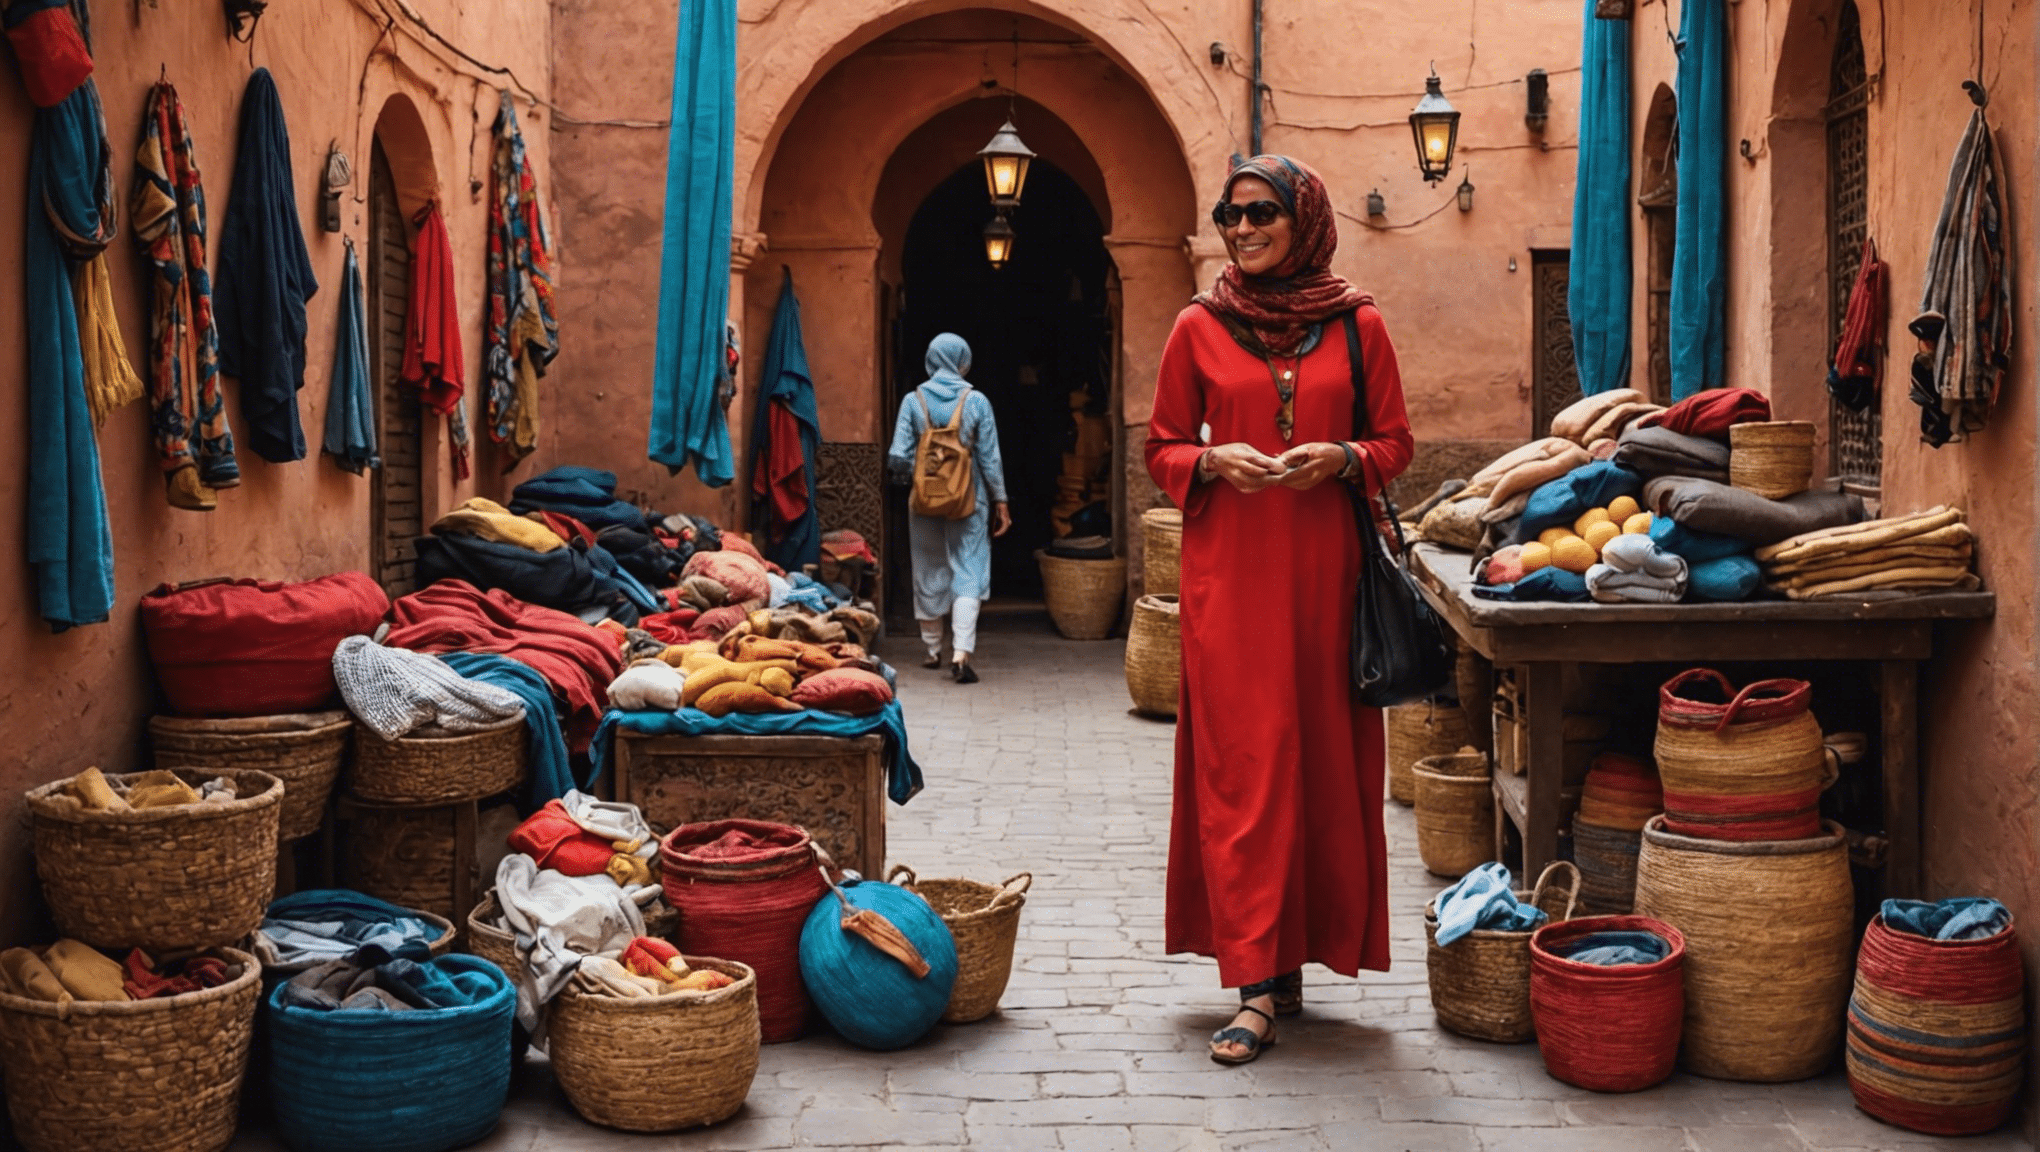 Finden Sie heraus, was Sie für Ihr ultimatives Abenteuer in Marrakesch im April unbedingt einpacken sollten, und machen Sie mit unseren hilfreichen Tipps und Vorschlägen das Beste aus Ihrer Reise.